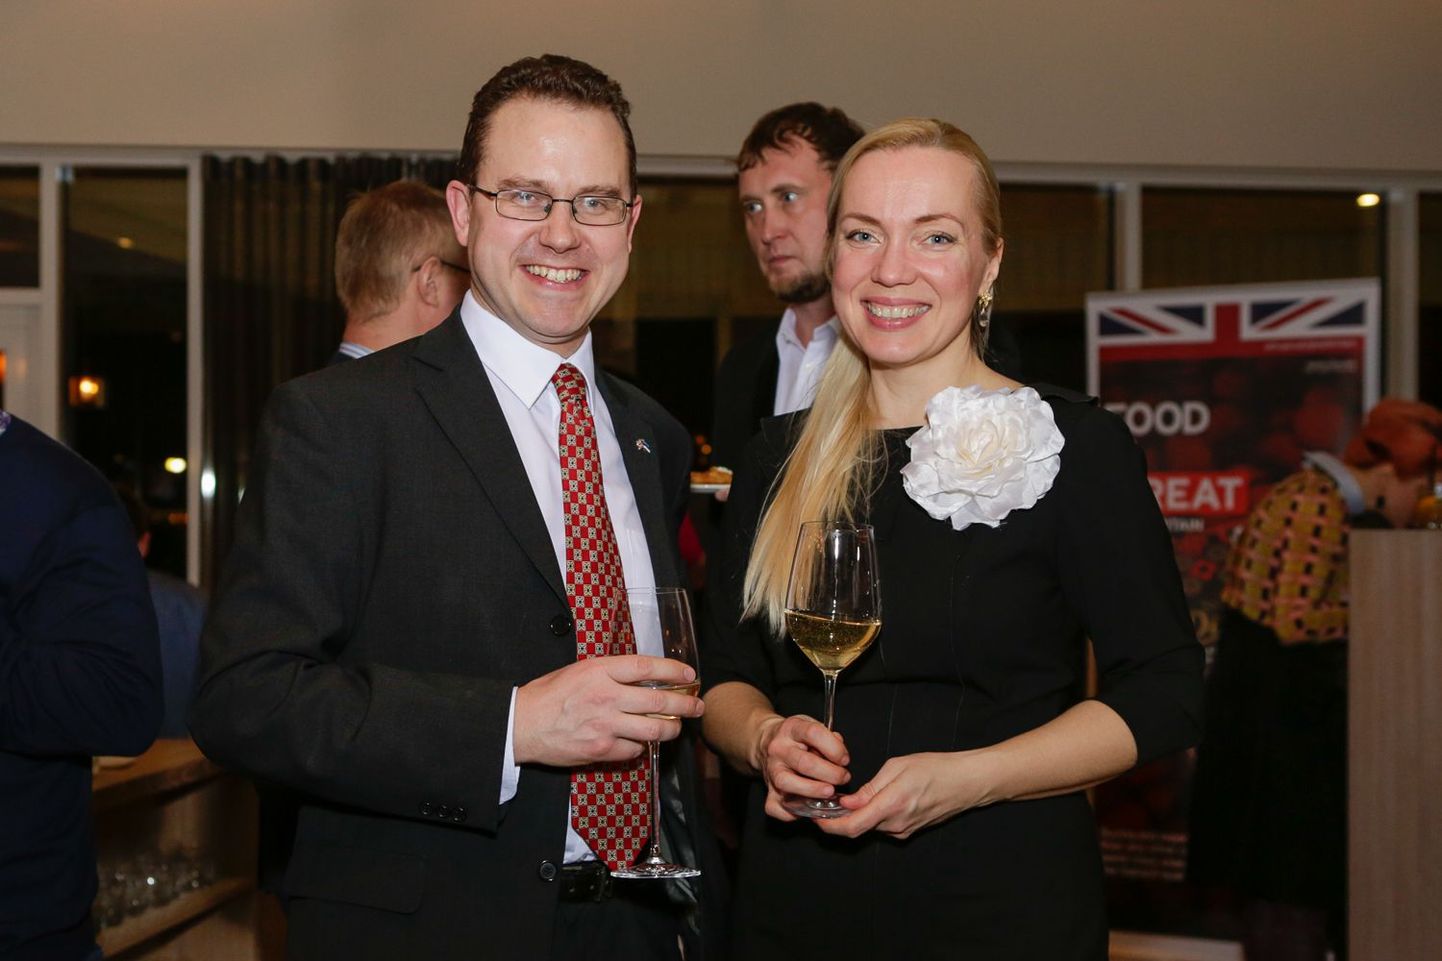 Võõrustajad: Briti suursaadik Chris Holtby ning saatkonna avalike suhete ja poliitikanõunik Kai-Ines Nelson. Tähelepanu: viimane trend lubab parimaid vahuveine juua veiniklaasist – nii pääsevad head omadused paremini esile.